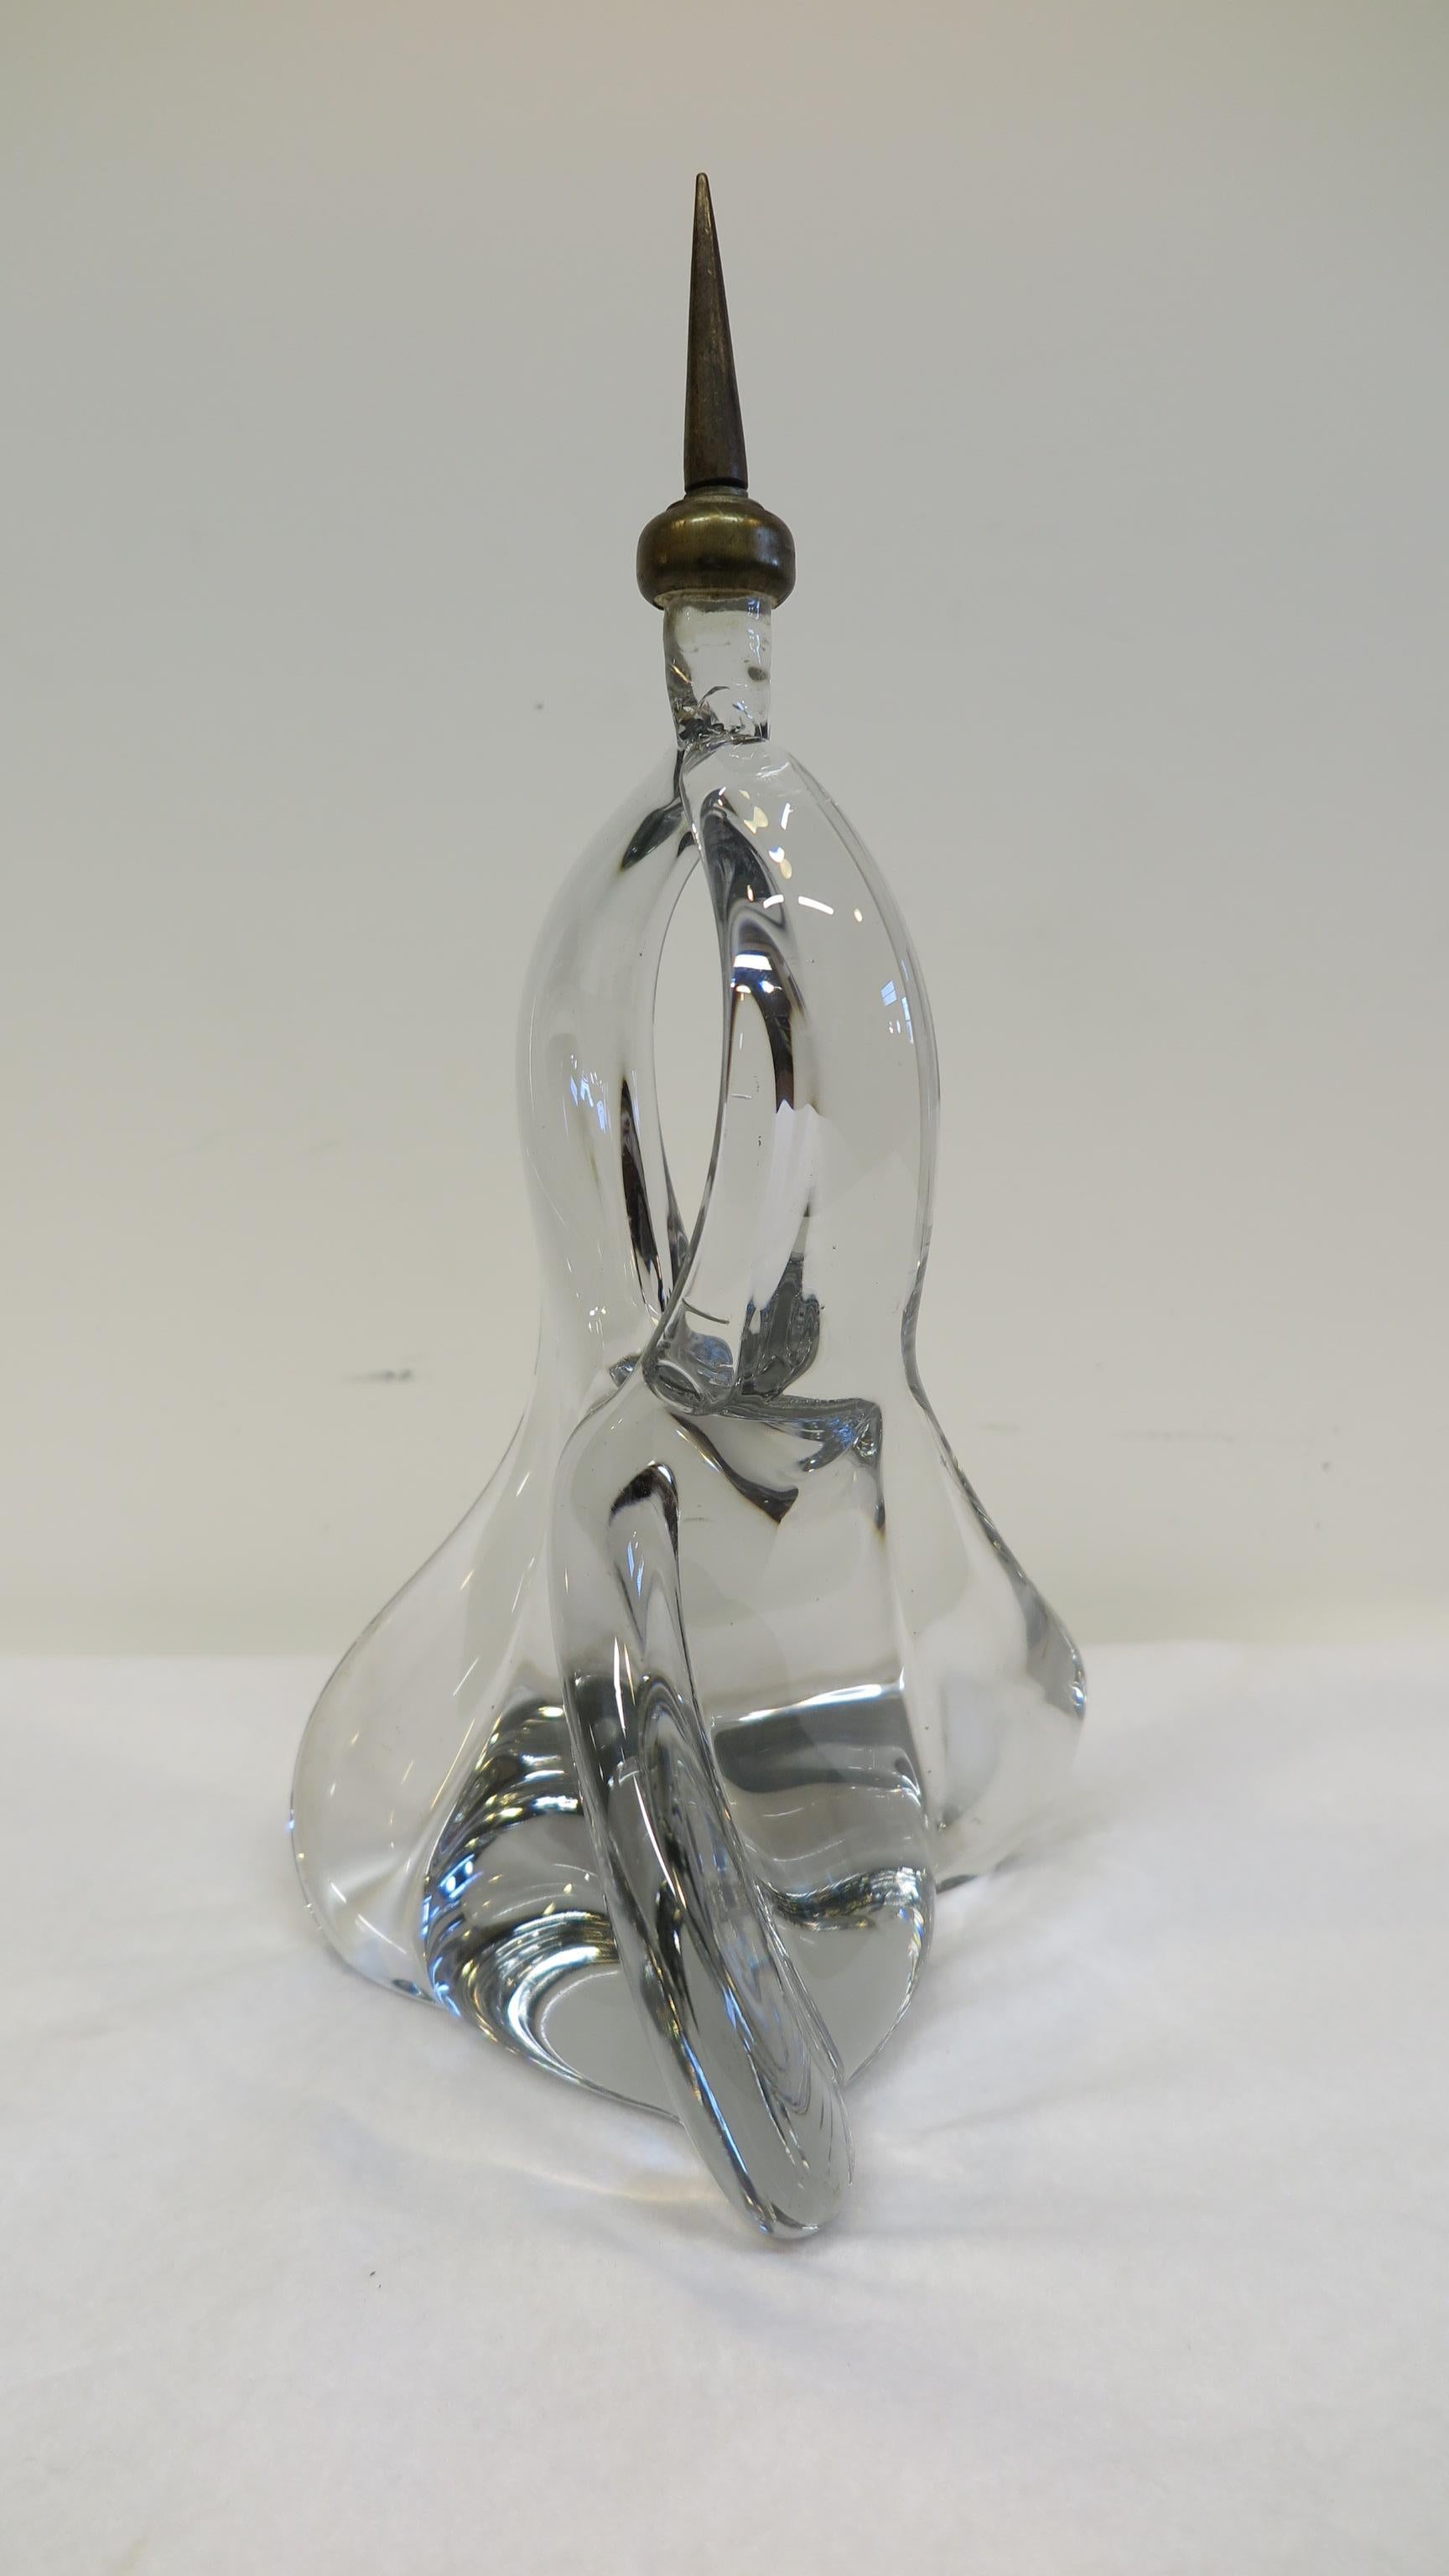 skulptur aus französischem Kristallglas von 1950. Eine abstrakte Form, die sich dreht und eine Vertiefung mit einer Messingspitze bildet. Handgeformt, geblasen, mit Luftblasen und Fehlstellen, in sehr gutem Zustand, unsigniert Frankreich, 1950-1960.